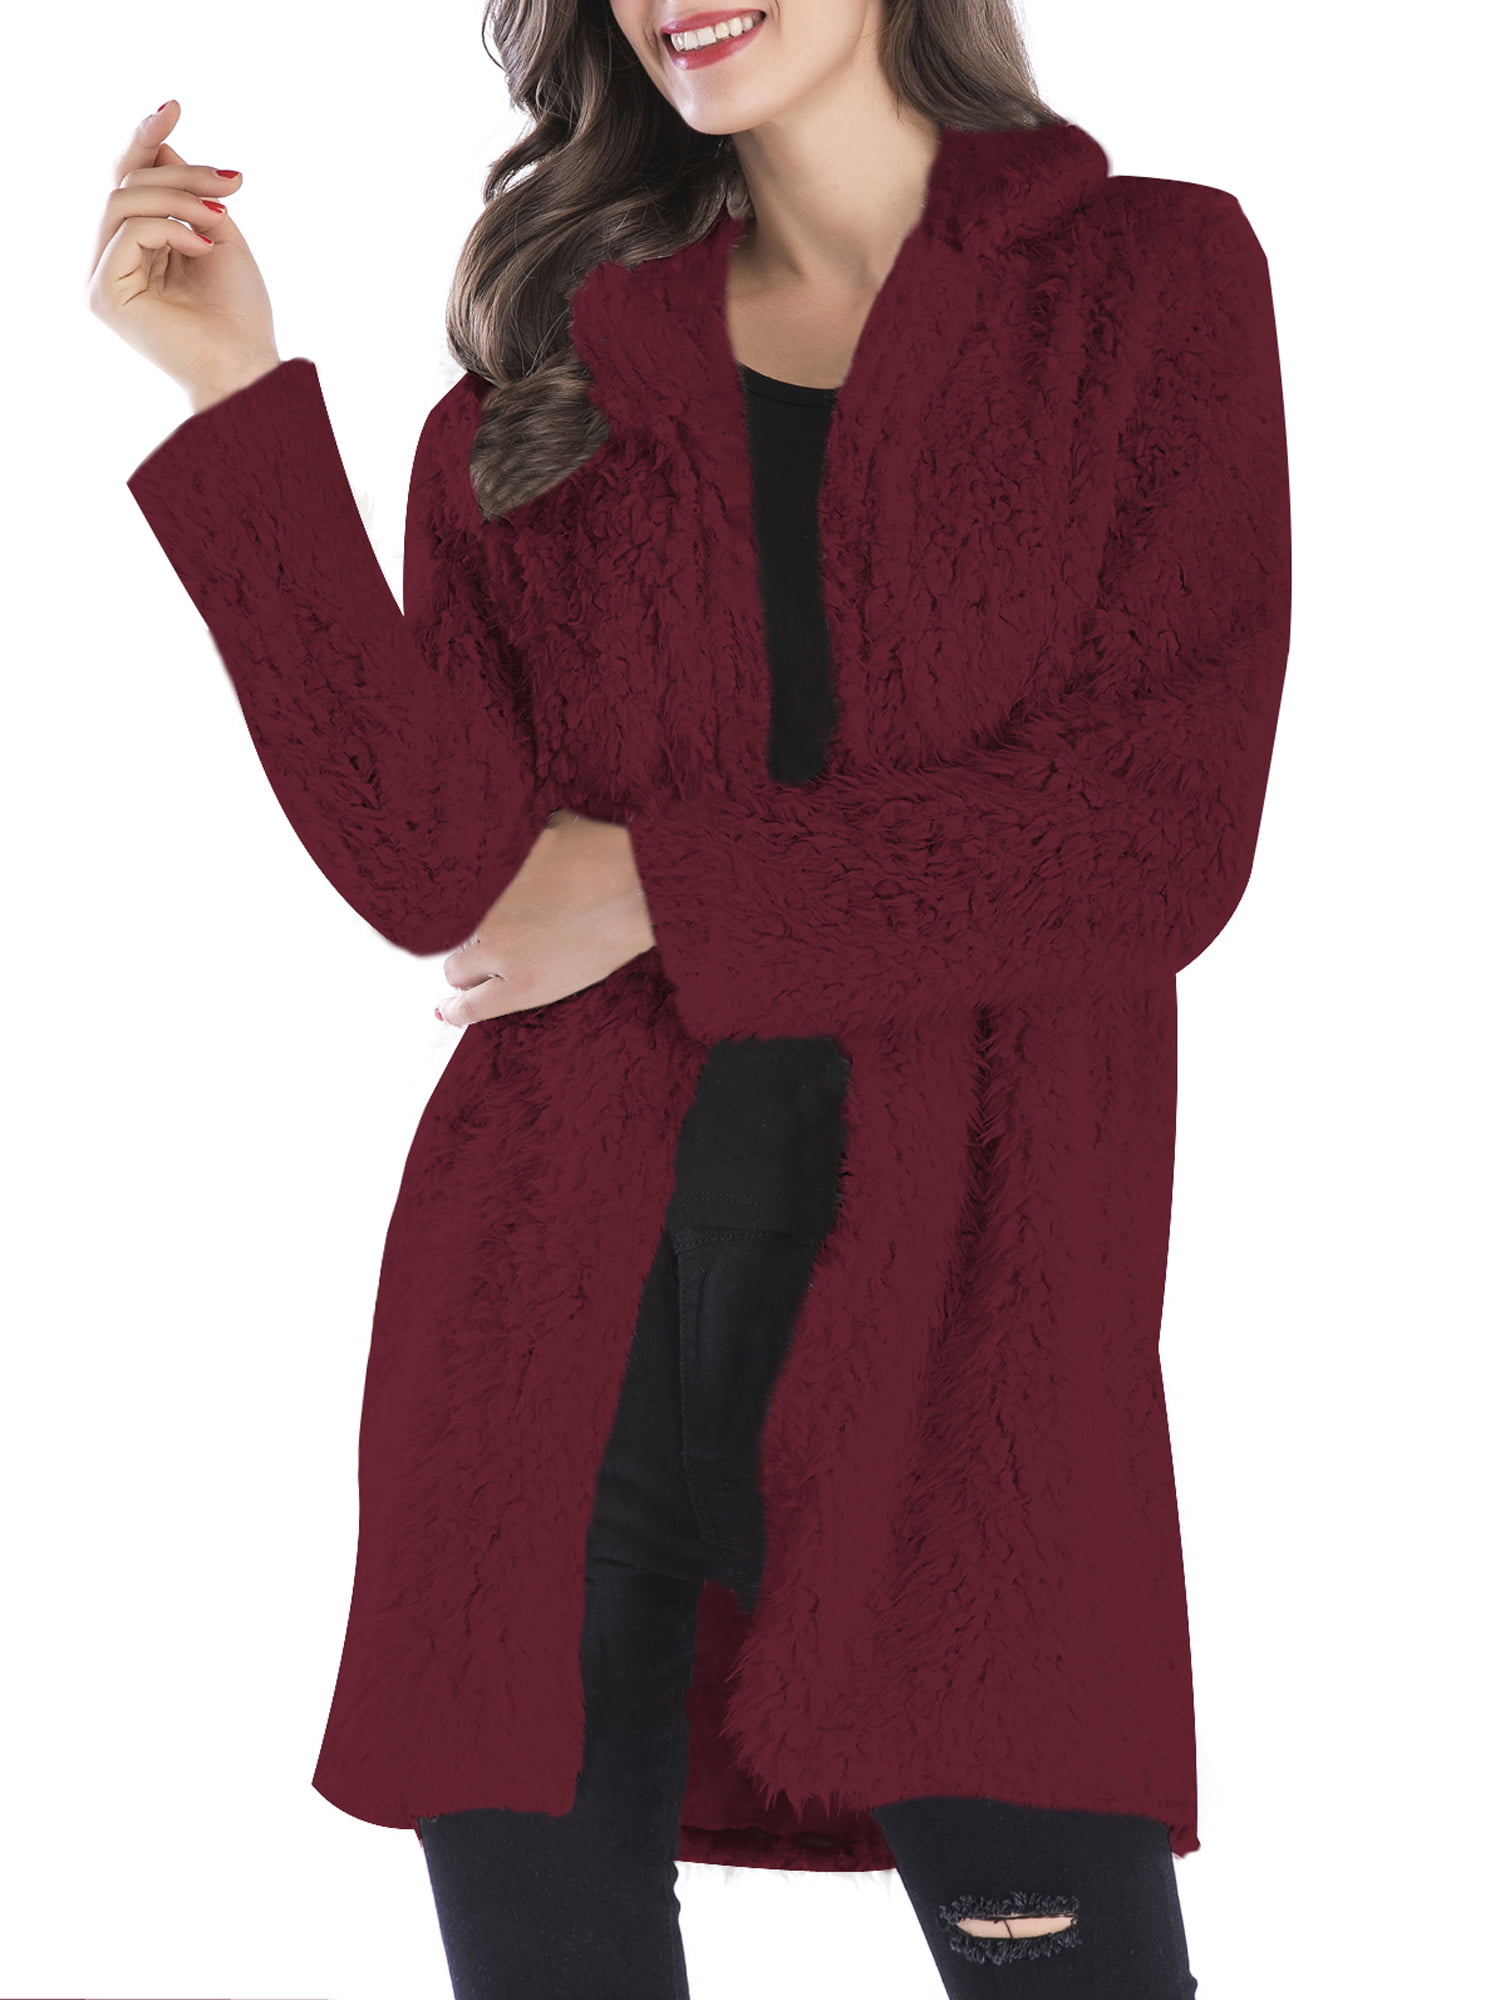 LELINTA Women's Fuzzy Fleece Lapel Open Front Long Cardigan Coat Faux Fur Warm Winter Outwear Jackets with Pockets, Beige/ Wine Red - Walmart.com